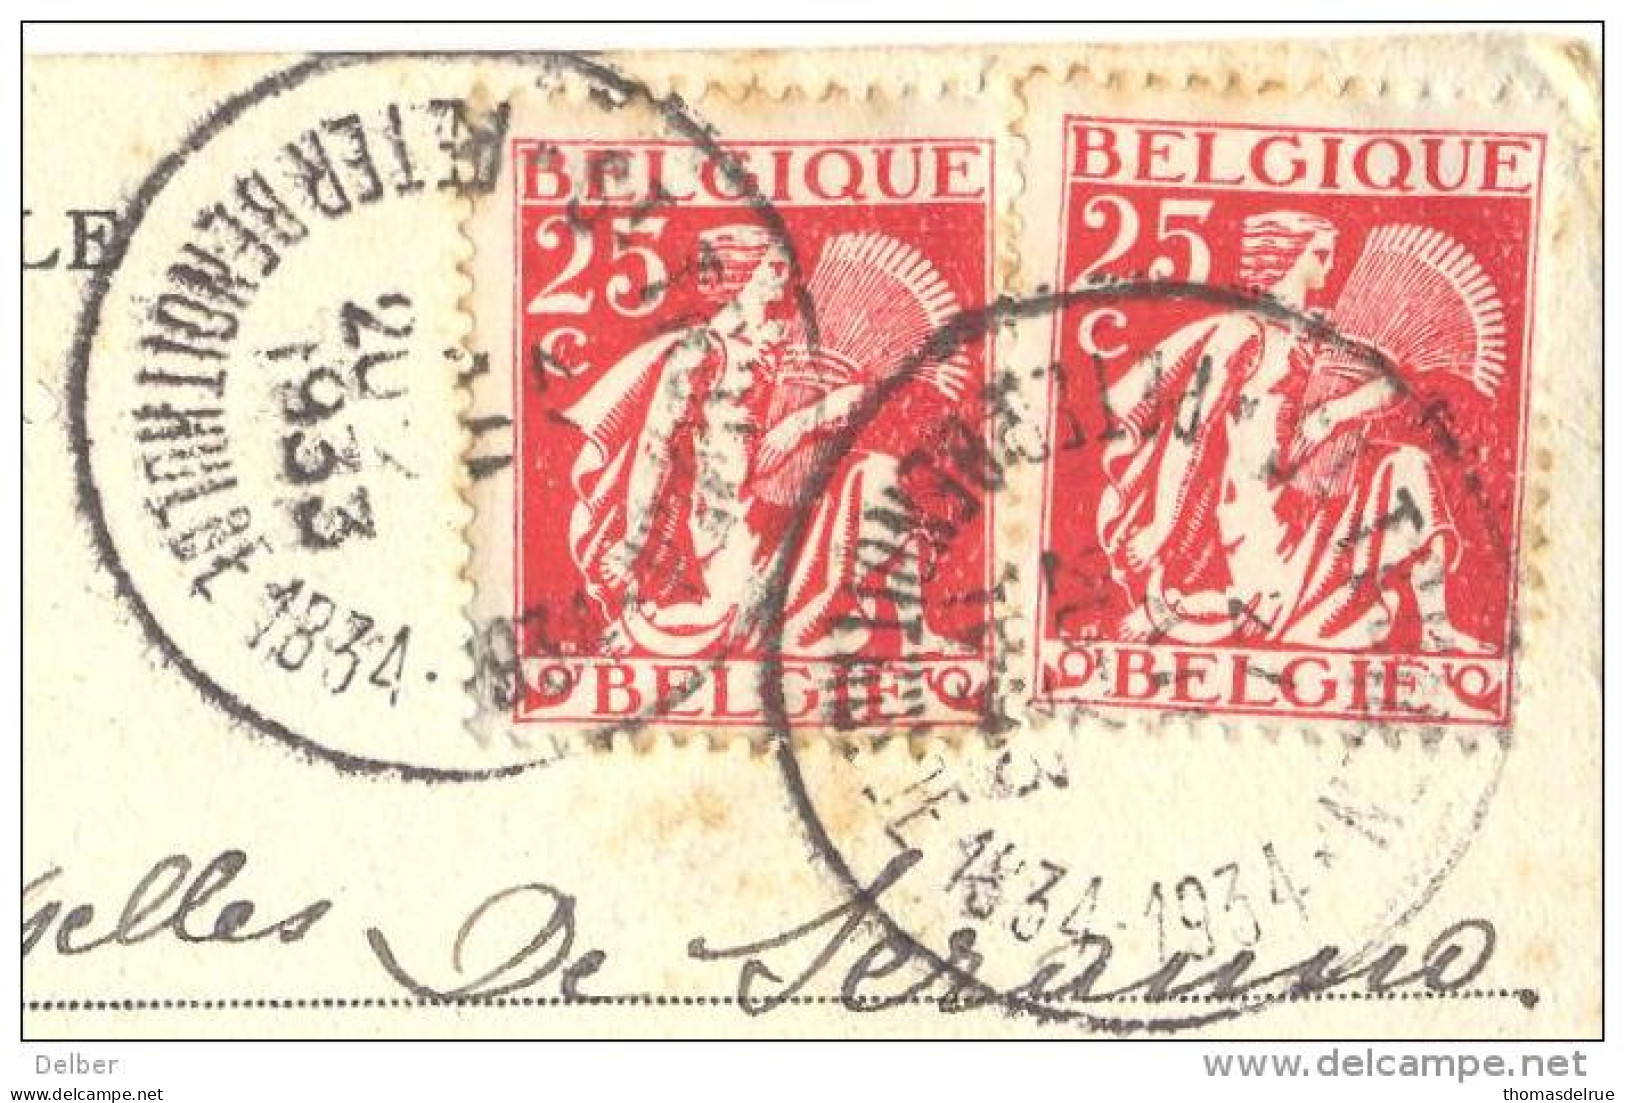 _ik174: N° 339+339::ST-TRUIDEN PETER BENOITHULDE 1834-1934... Op Fantasie Kaartje Met Verknipte Postzegels..HOUYOUX... - 1932 Ceres E Mercurio